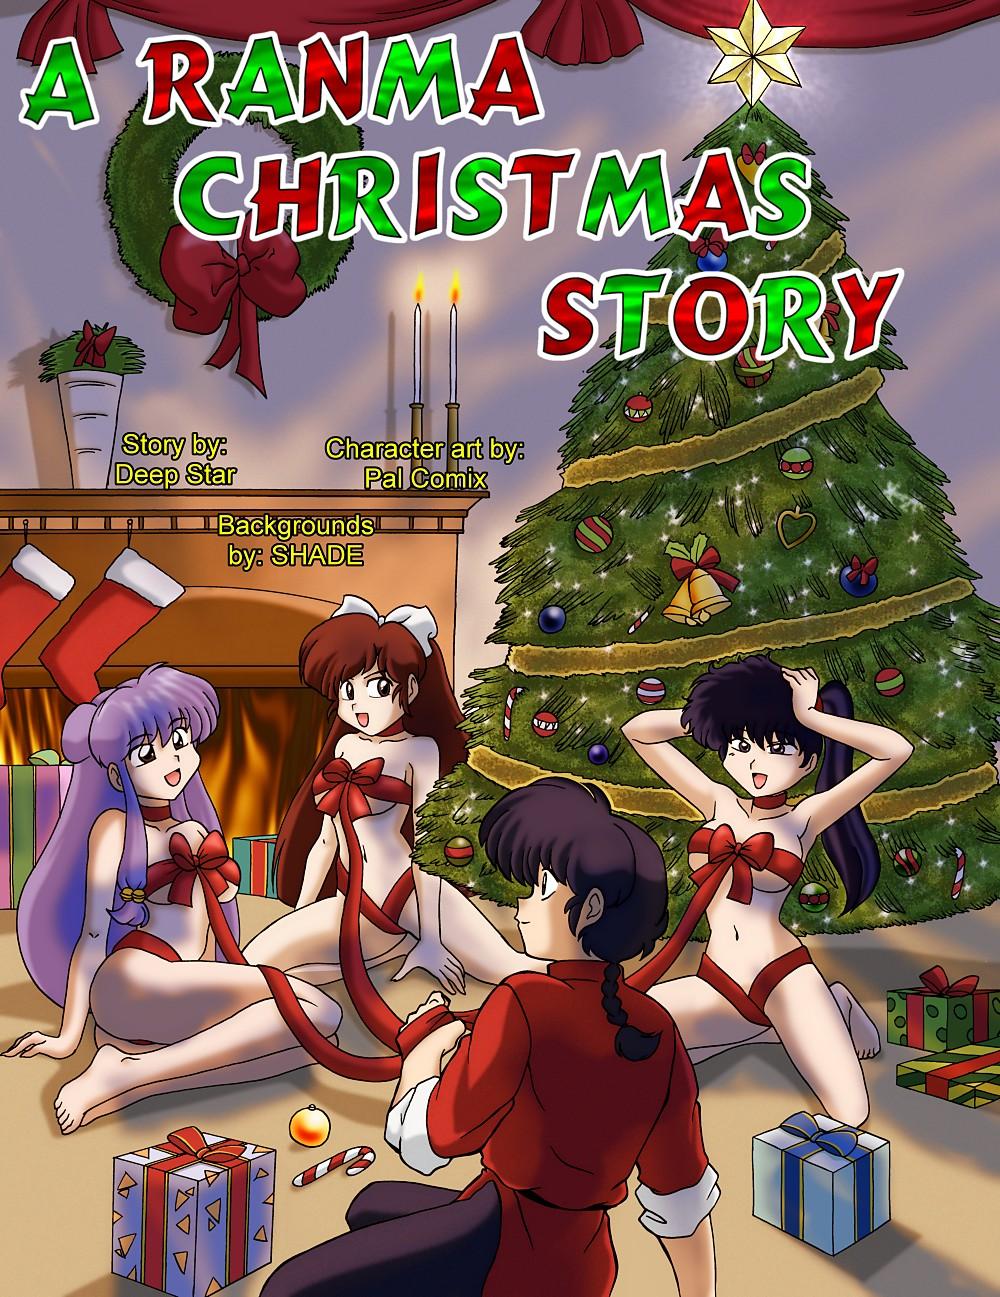 A Christmas Story Porn - A Ranma Christmas Story - Porn Cartoon Comics